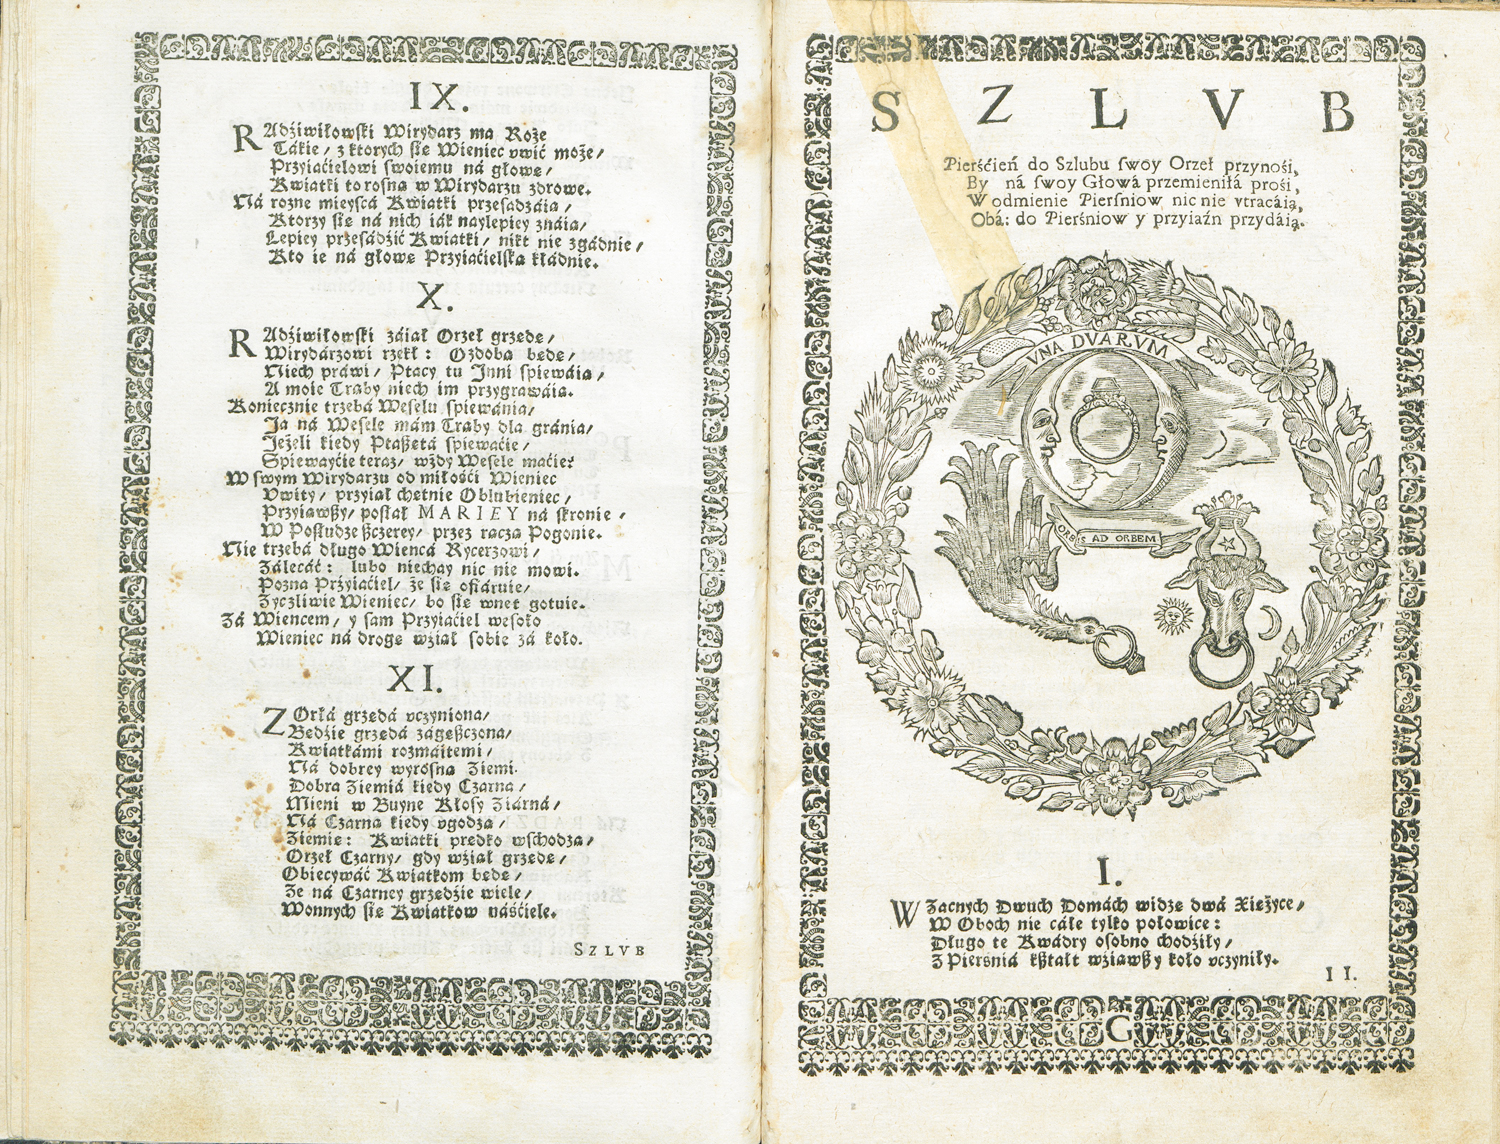 Панегірик Теодозія Баєвського «Choreae bini solis et lunac», 1645. Гравер Ілля